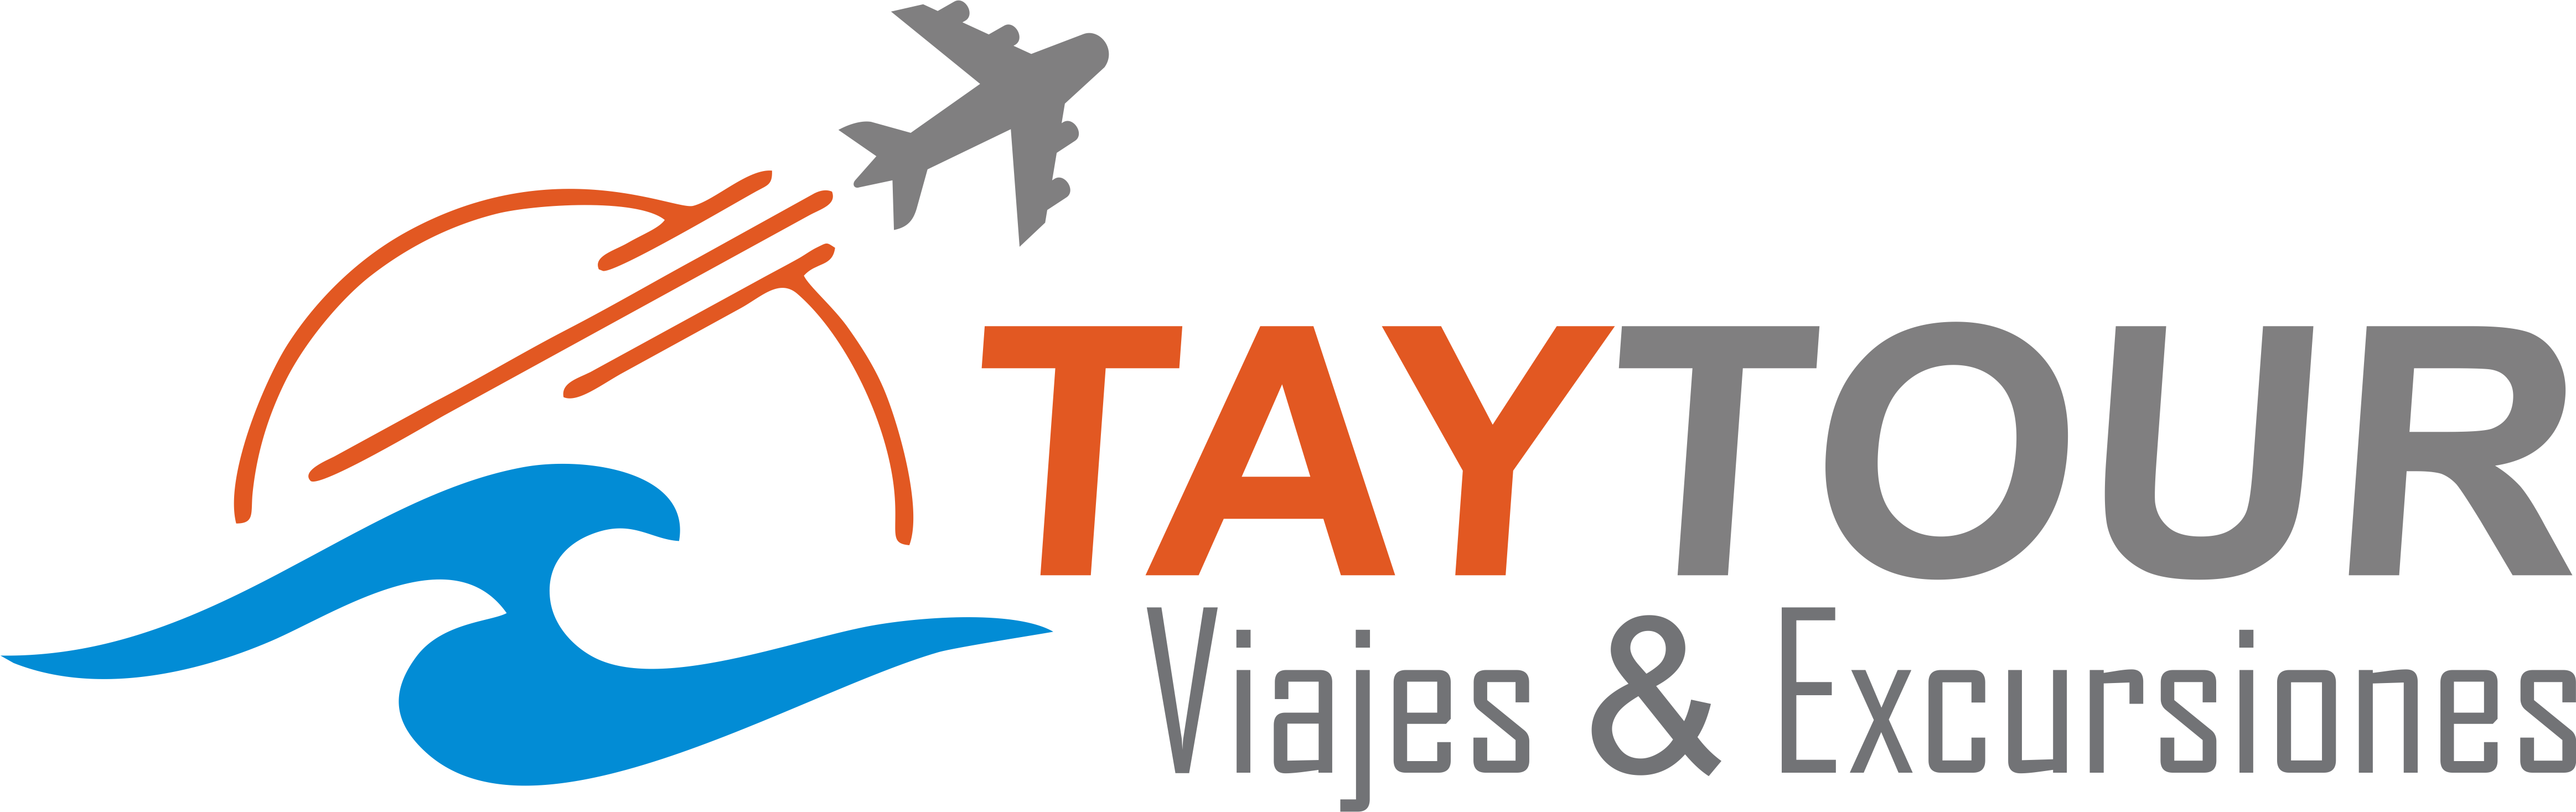 Taytour Travel / Agencia de Viajes y Operador Turístico